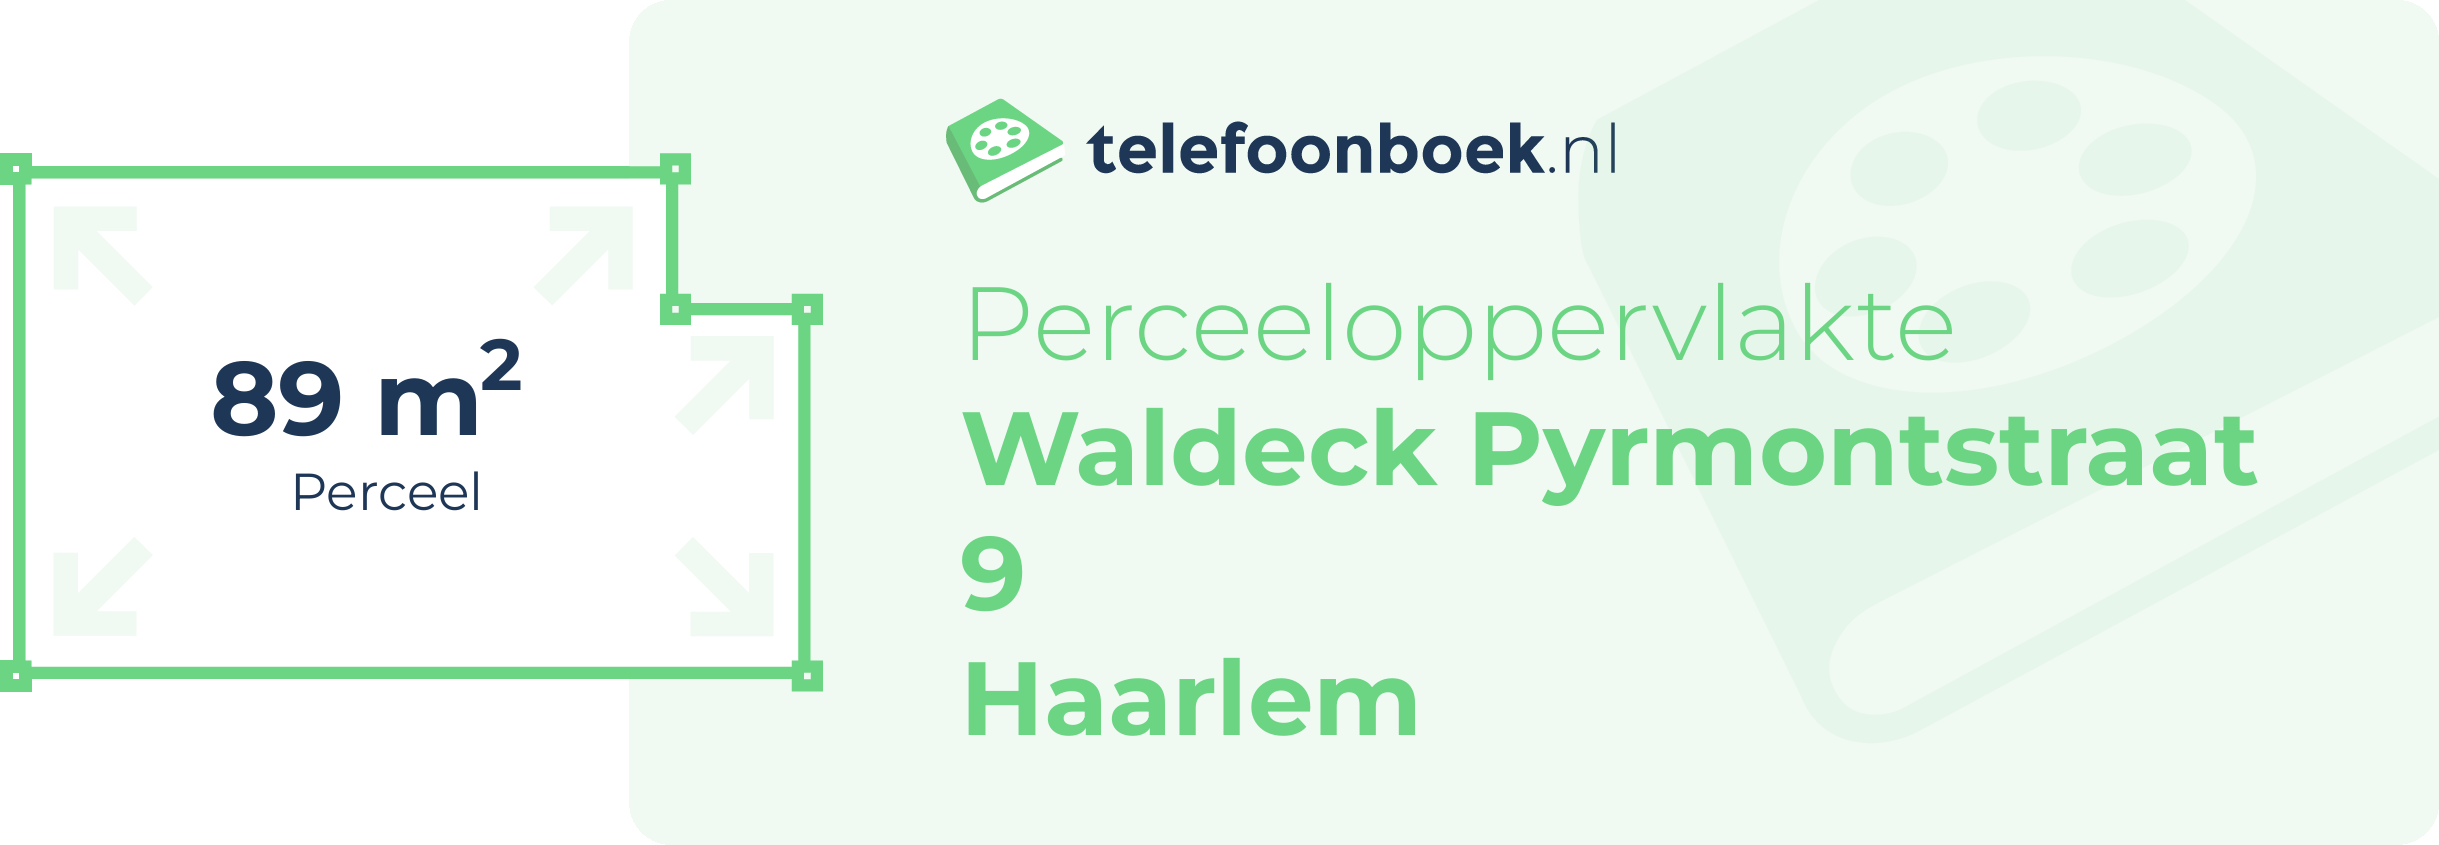 Perceeloppervlakte Waldeck Pyrmontstraat 9 Haarlem